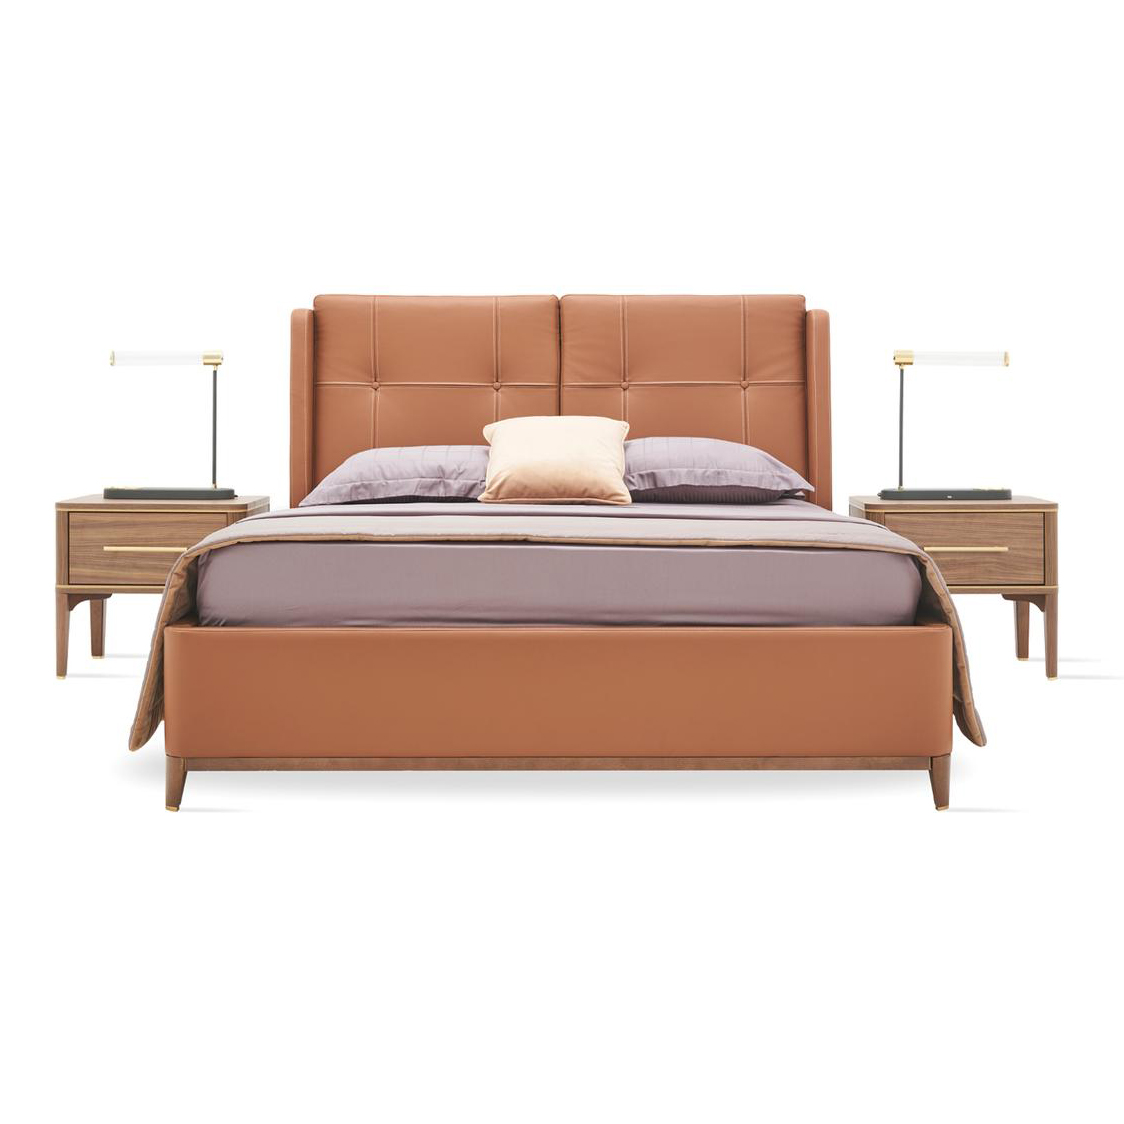 Кровать Enza Home Raum, двуспальная, с подъемным механизмом, 200х200 см